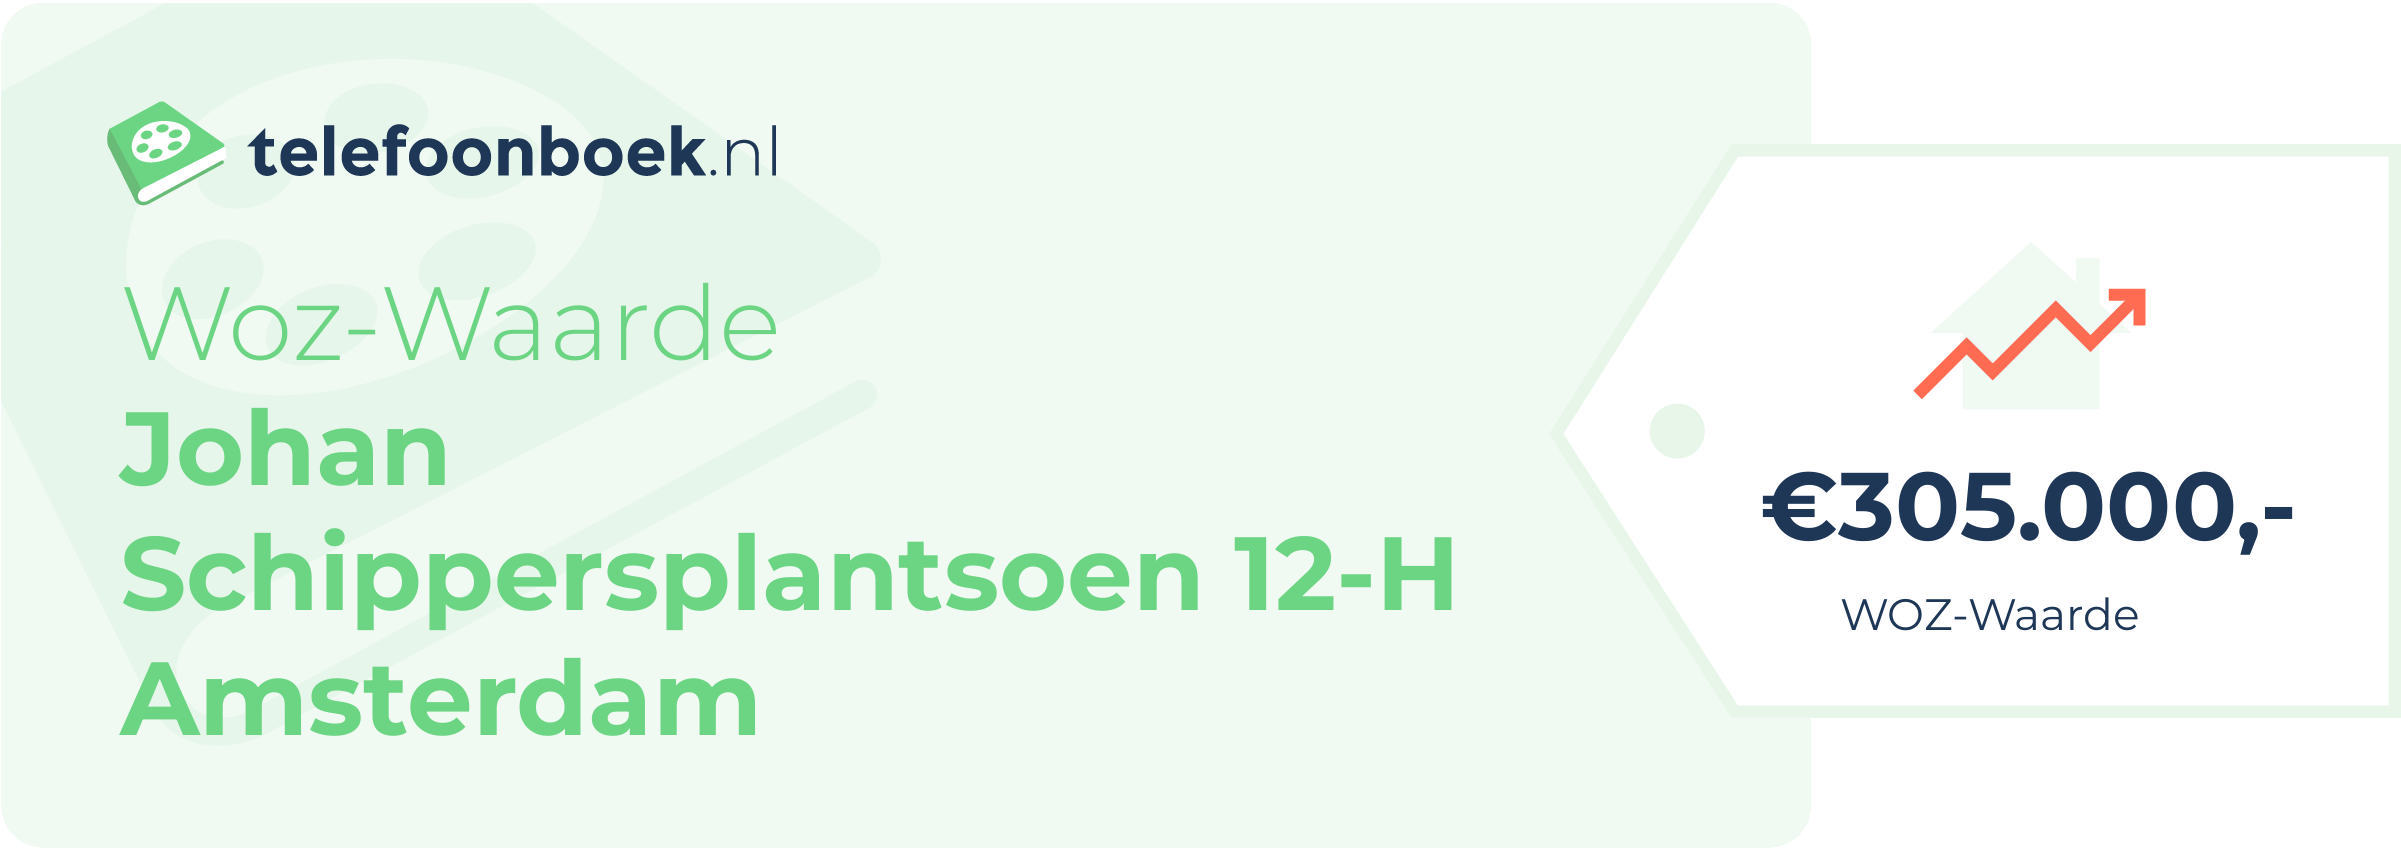 WOZ-waarde Johan Schippersplantsoen 12-H Amsterdam